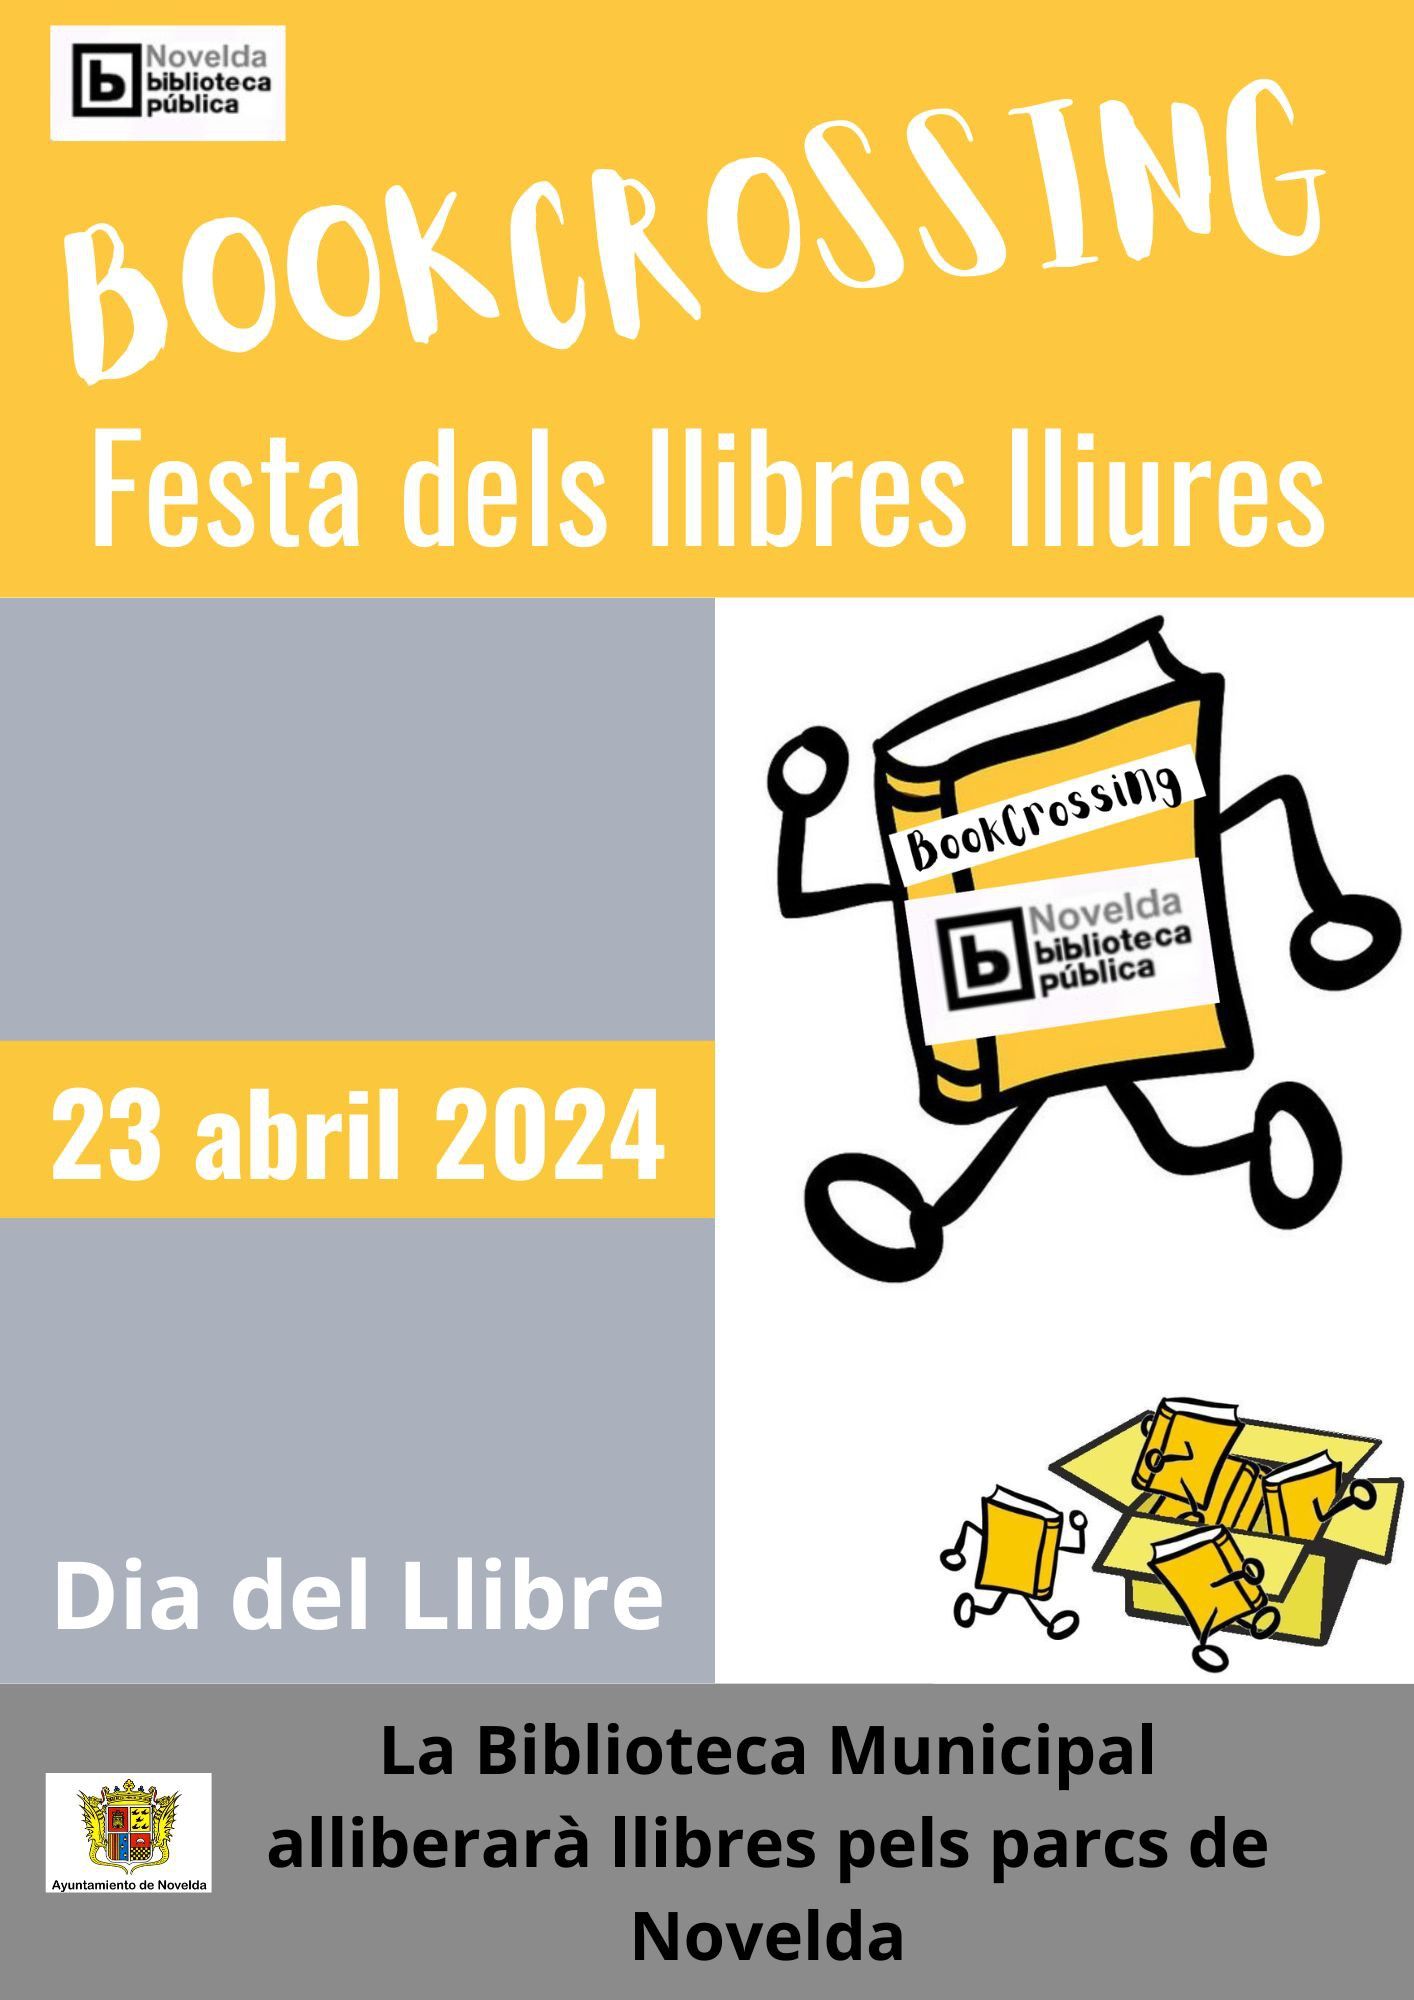 Ayuntamiento de Novelda Dia-Libro Fiesta de los libros libres 